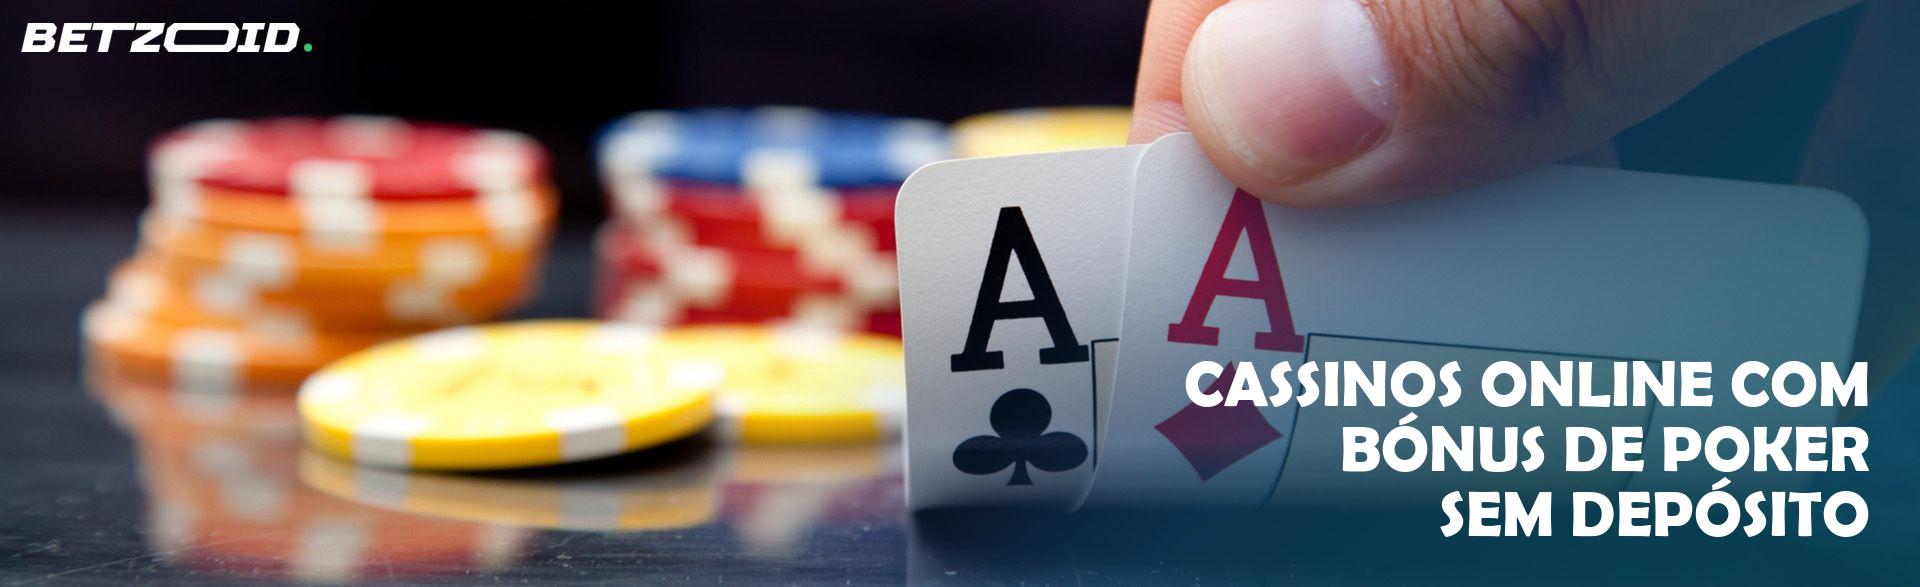 Cassinos Online com Bónus de Poker sem Depósito.